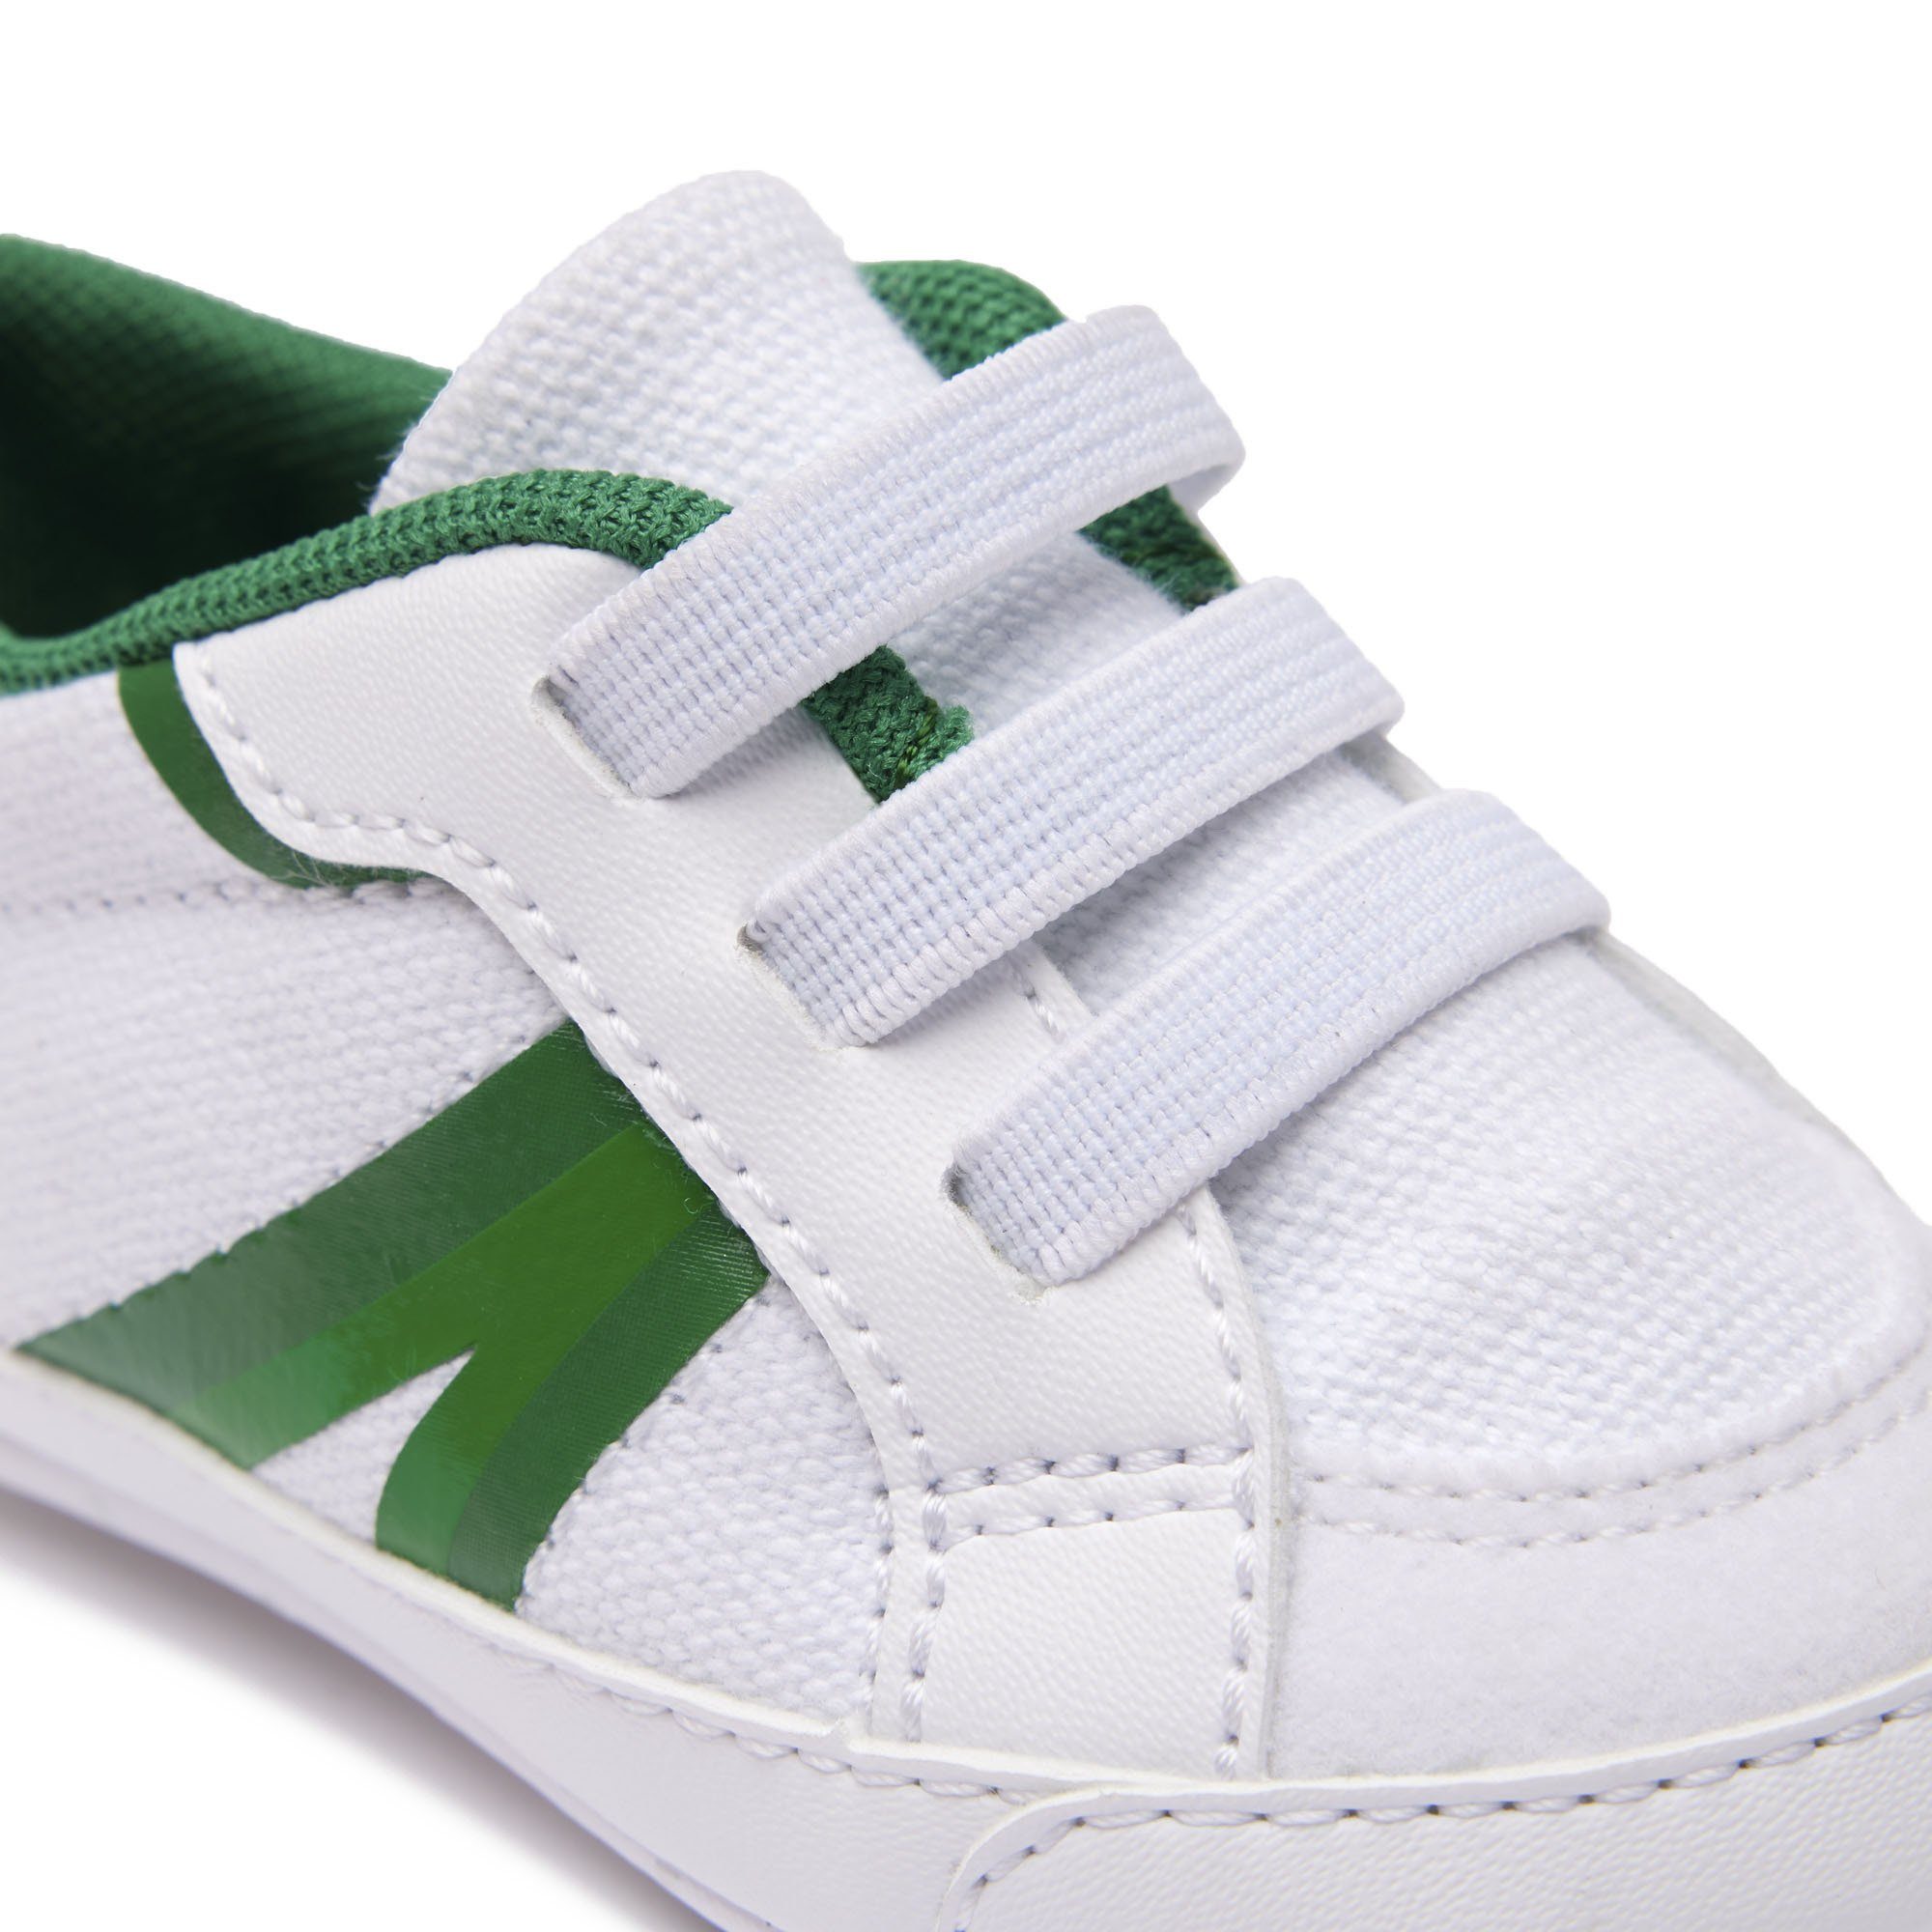 Weiß/Grün Krabbelschuhe, Baby L004 Sneaker, - Krabbelschuh Schuhe Lacoste Cub,